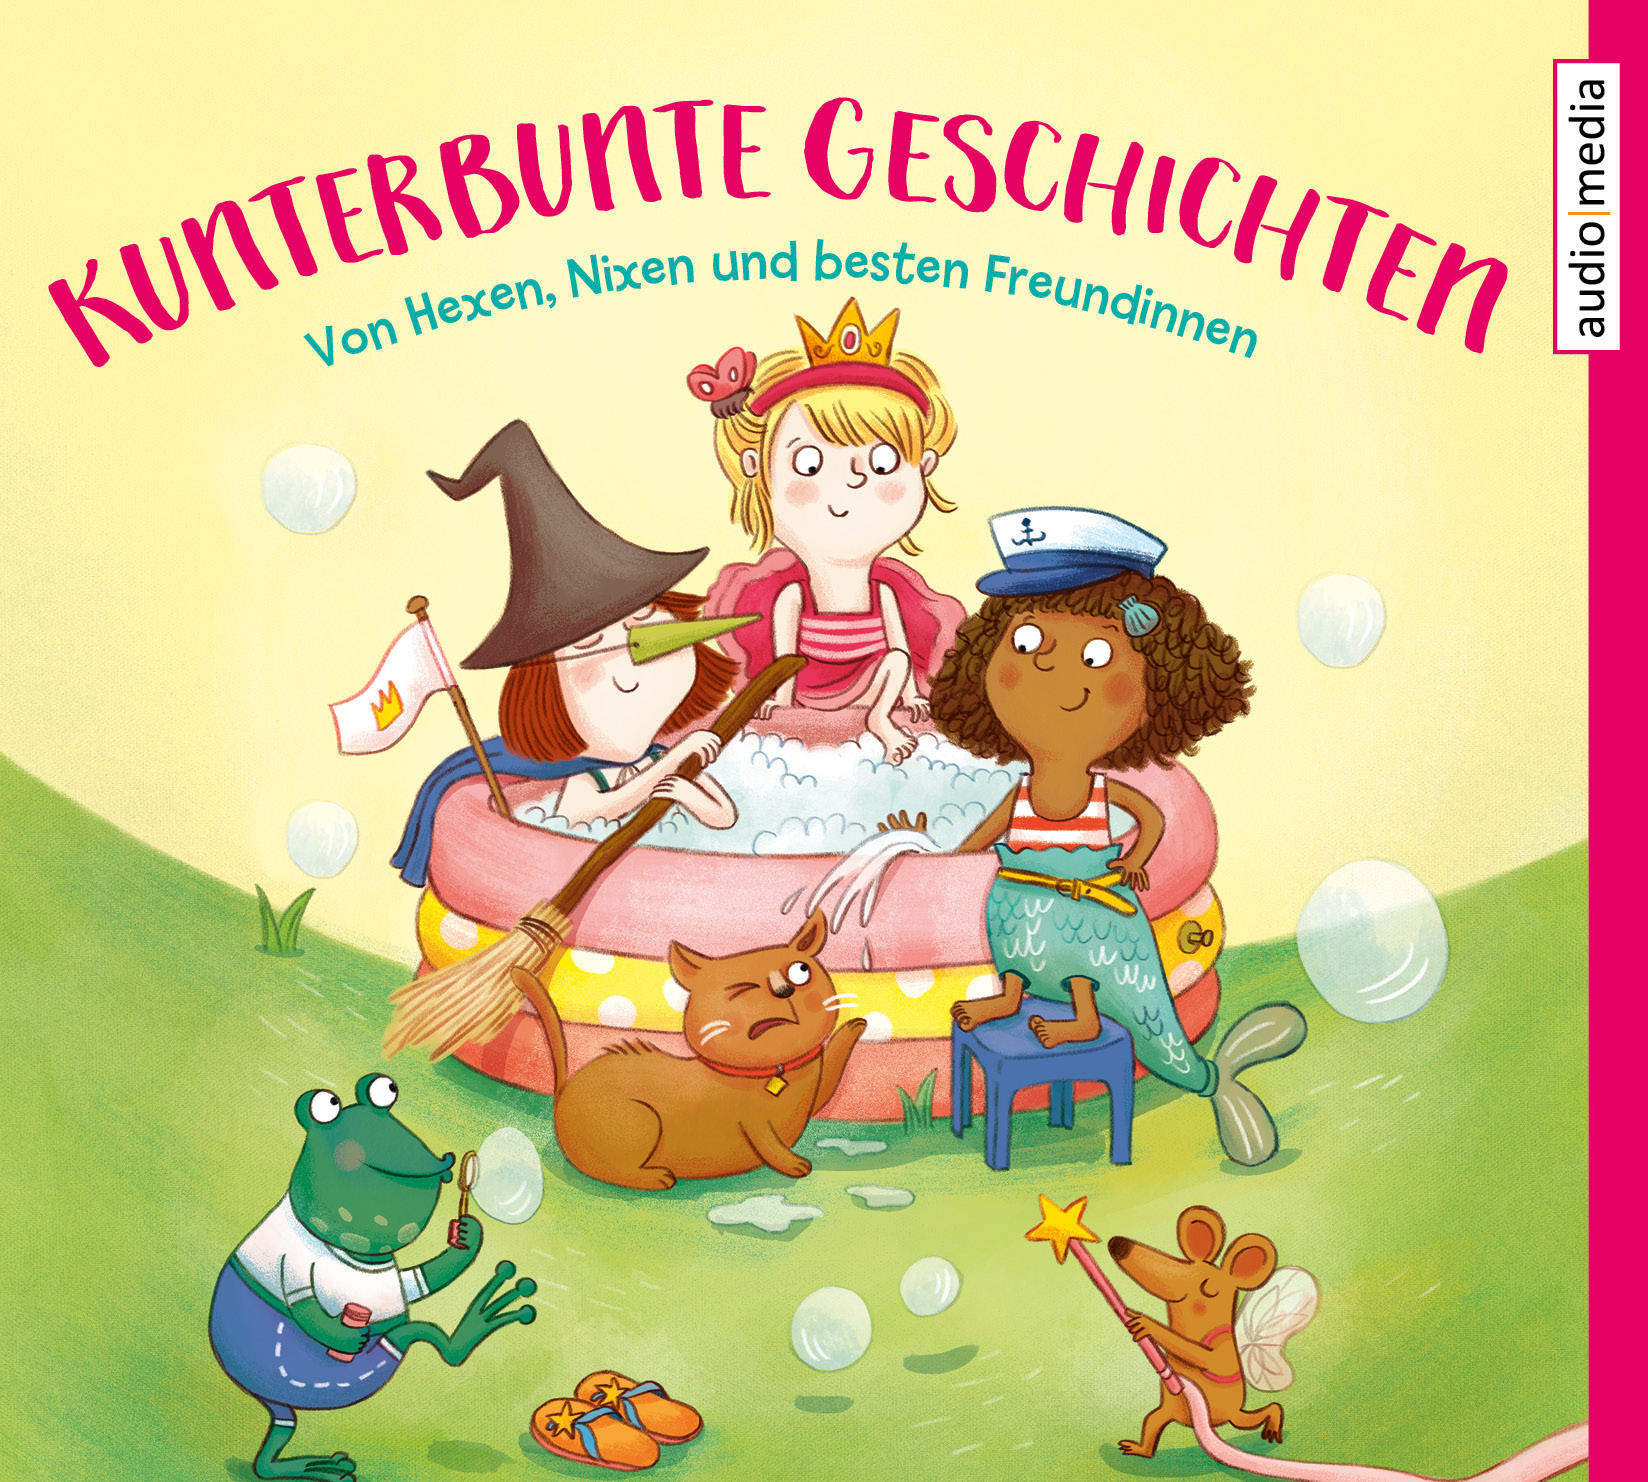 Kunterbunte Geschichten: (CD) Freundinnen besten - Nixen und Hexen, Von